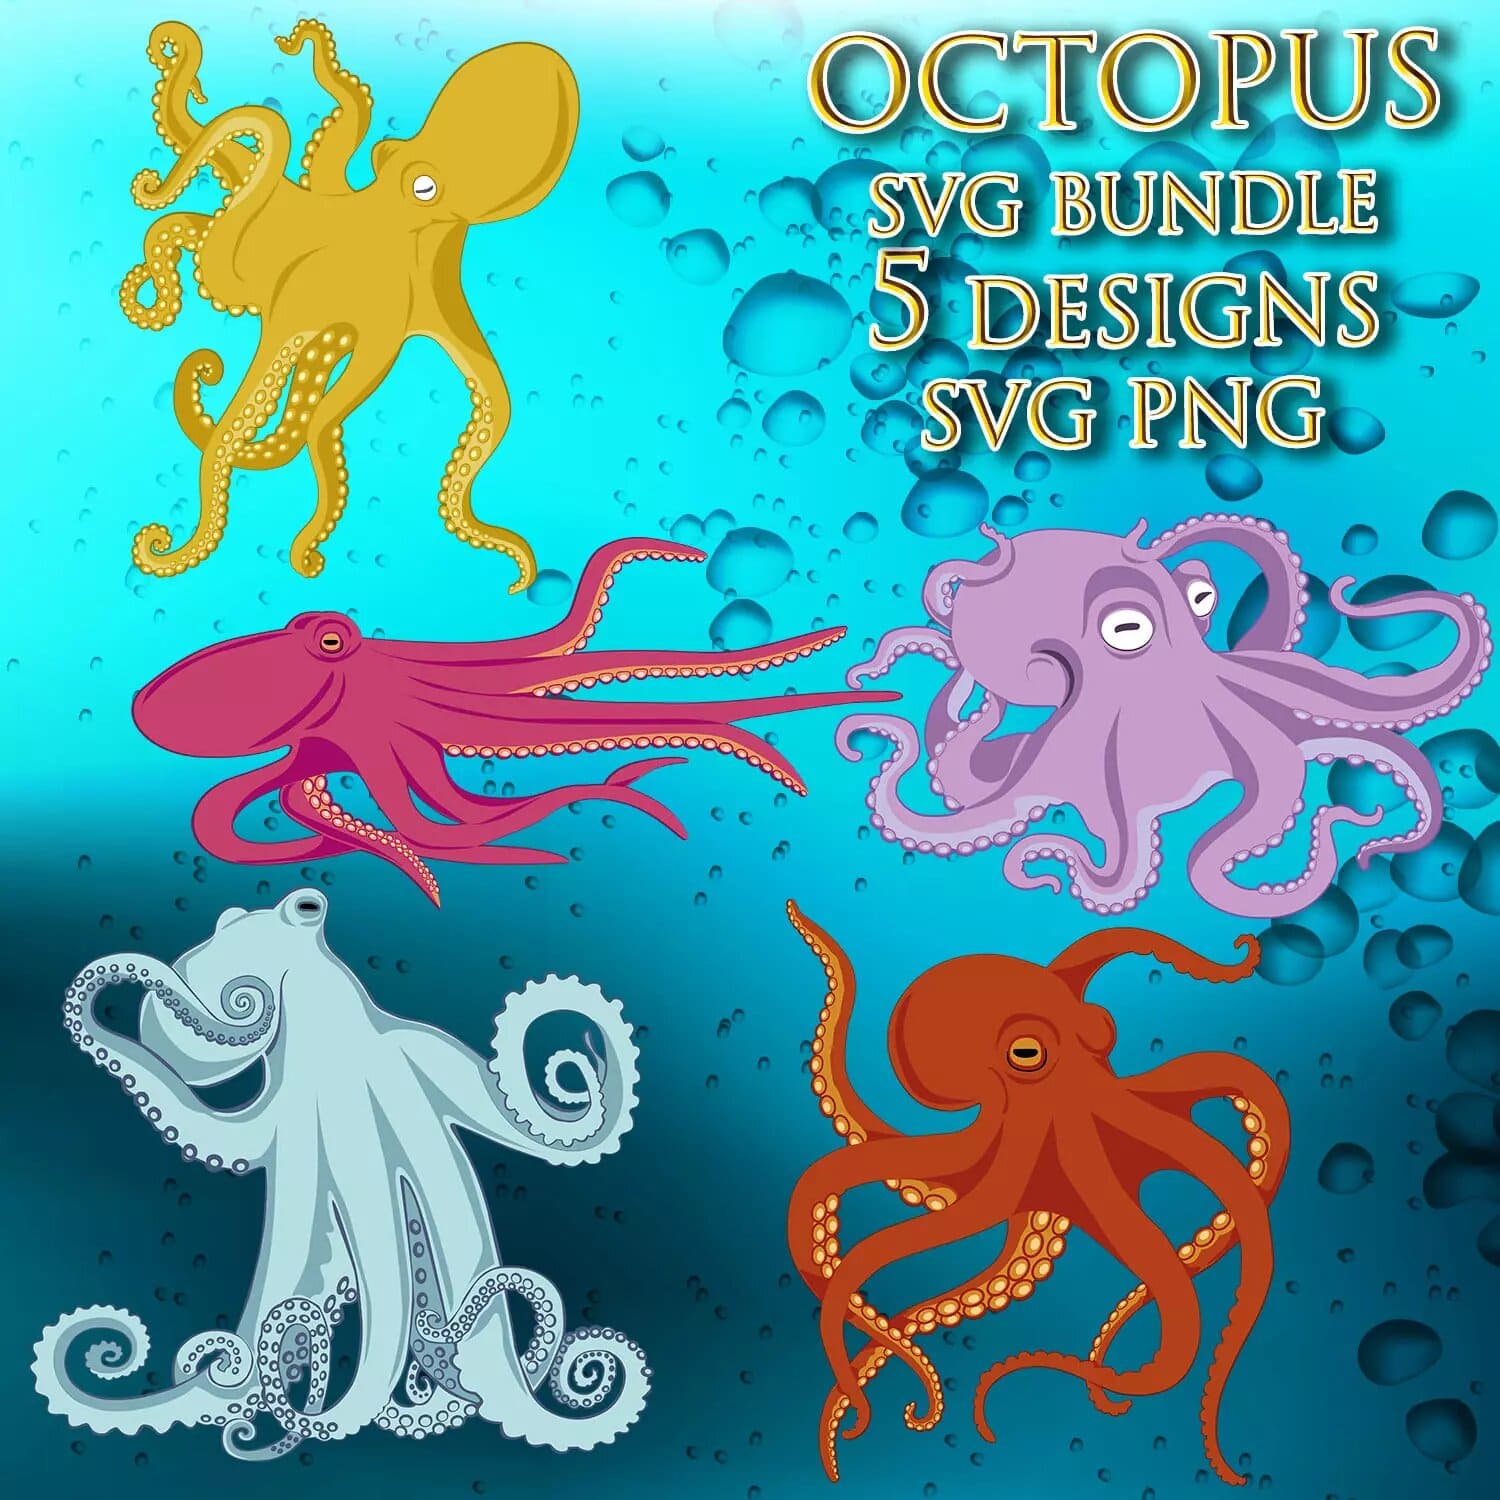 Octopus svg bundle 5 designs svg file.